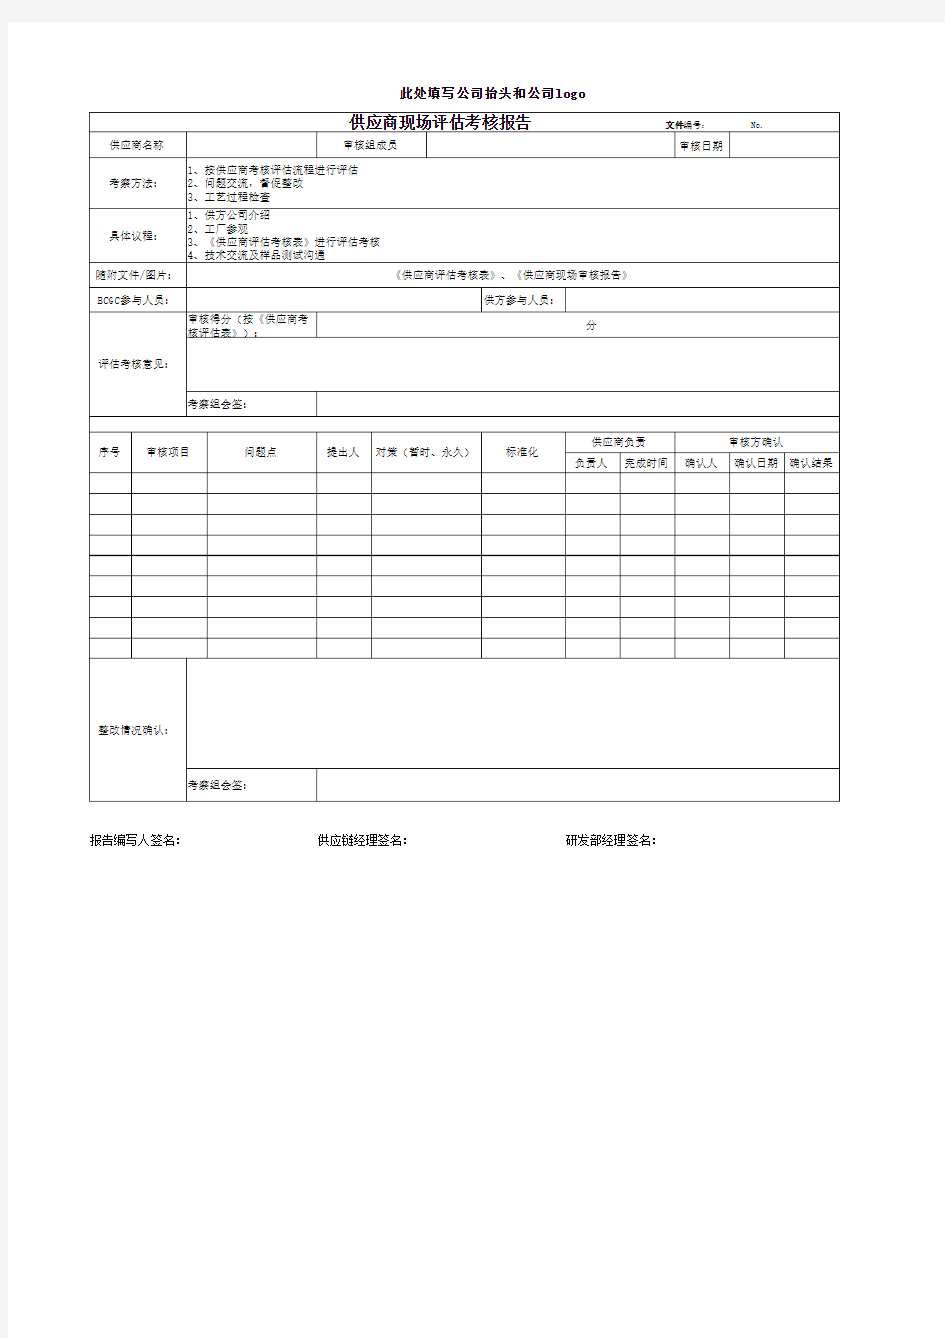 供应商现场评估考核报告(模版)